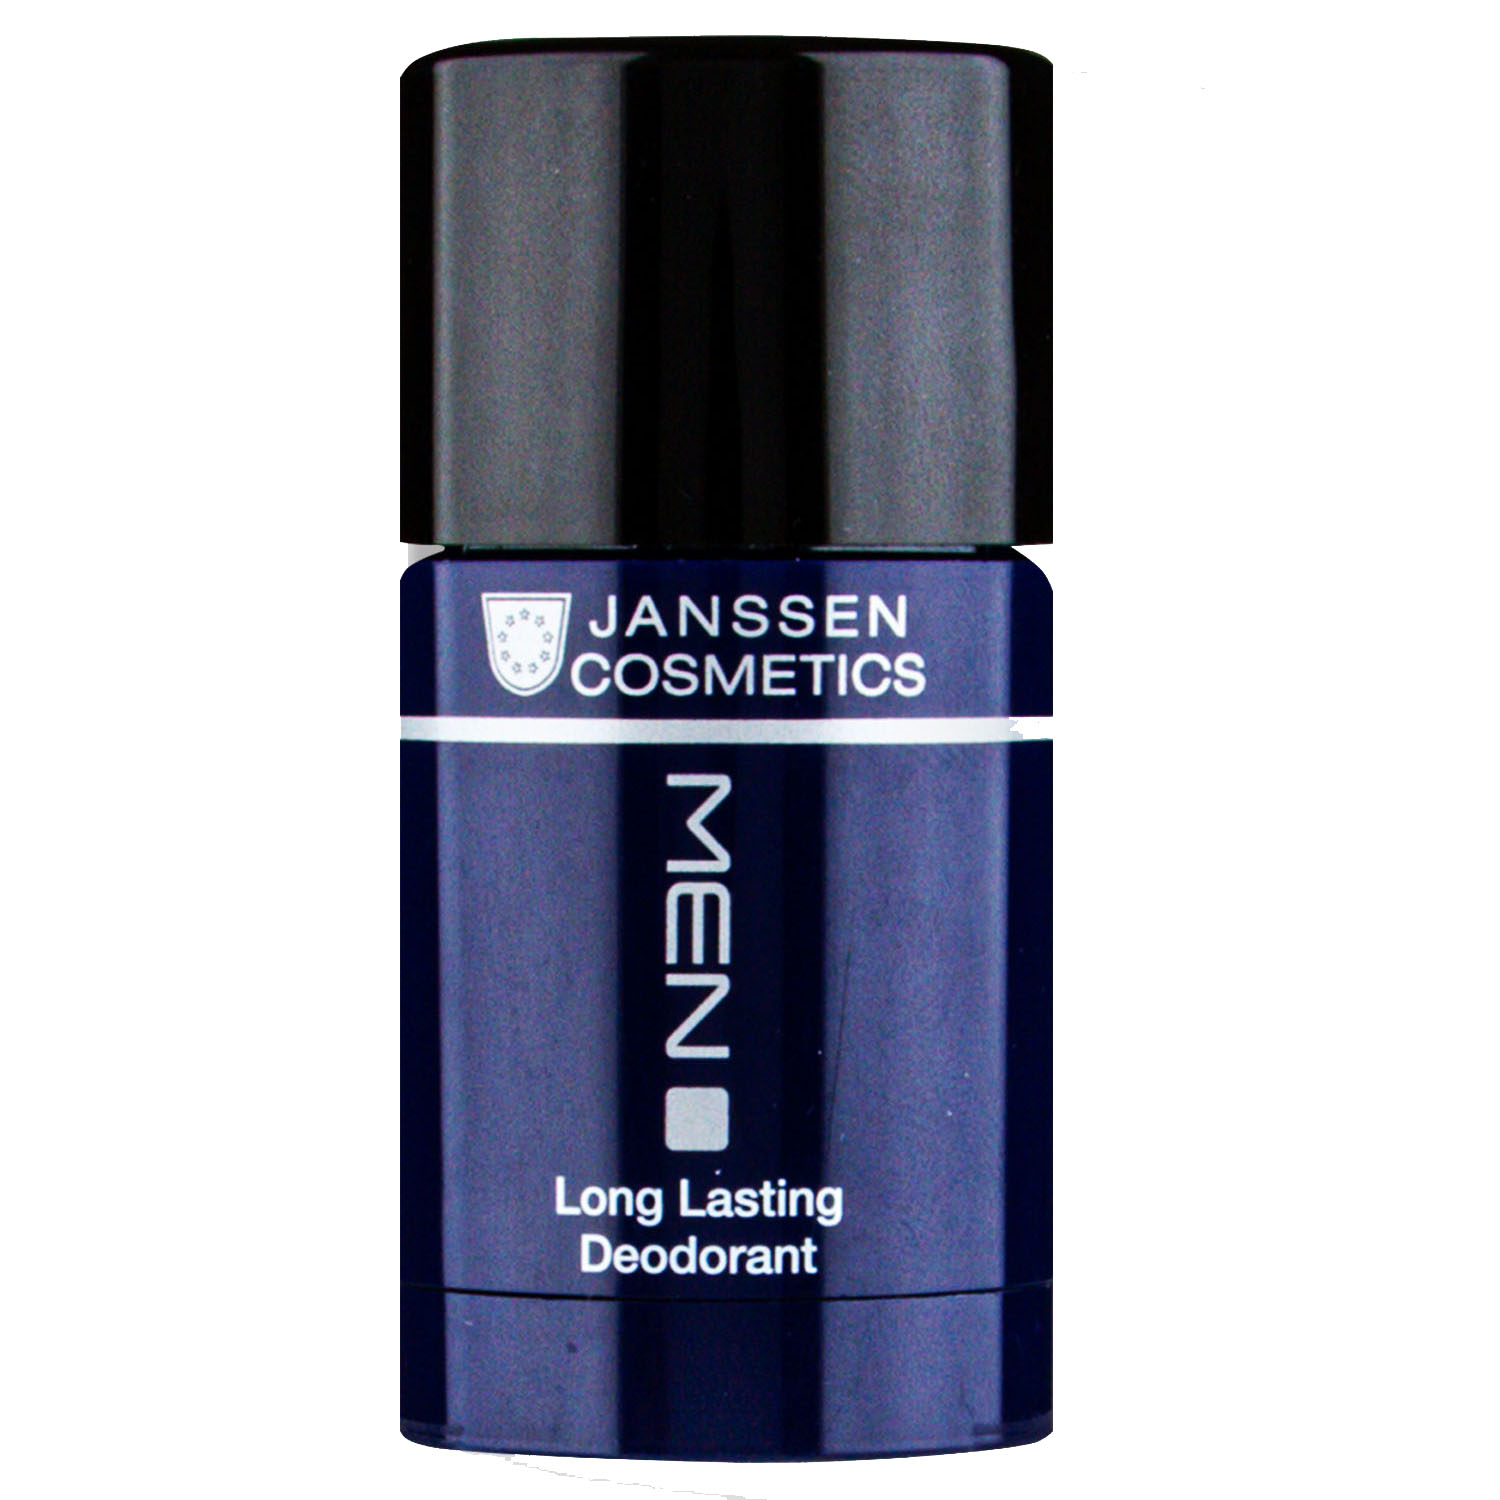 Janssen Cosmetics Дезодорант длительного действия Long Lasting Deodorant, 30 мл (Janssen Cosmetics, Men) janssen cosmetics men long lasting deodorant